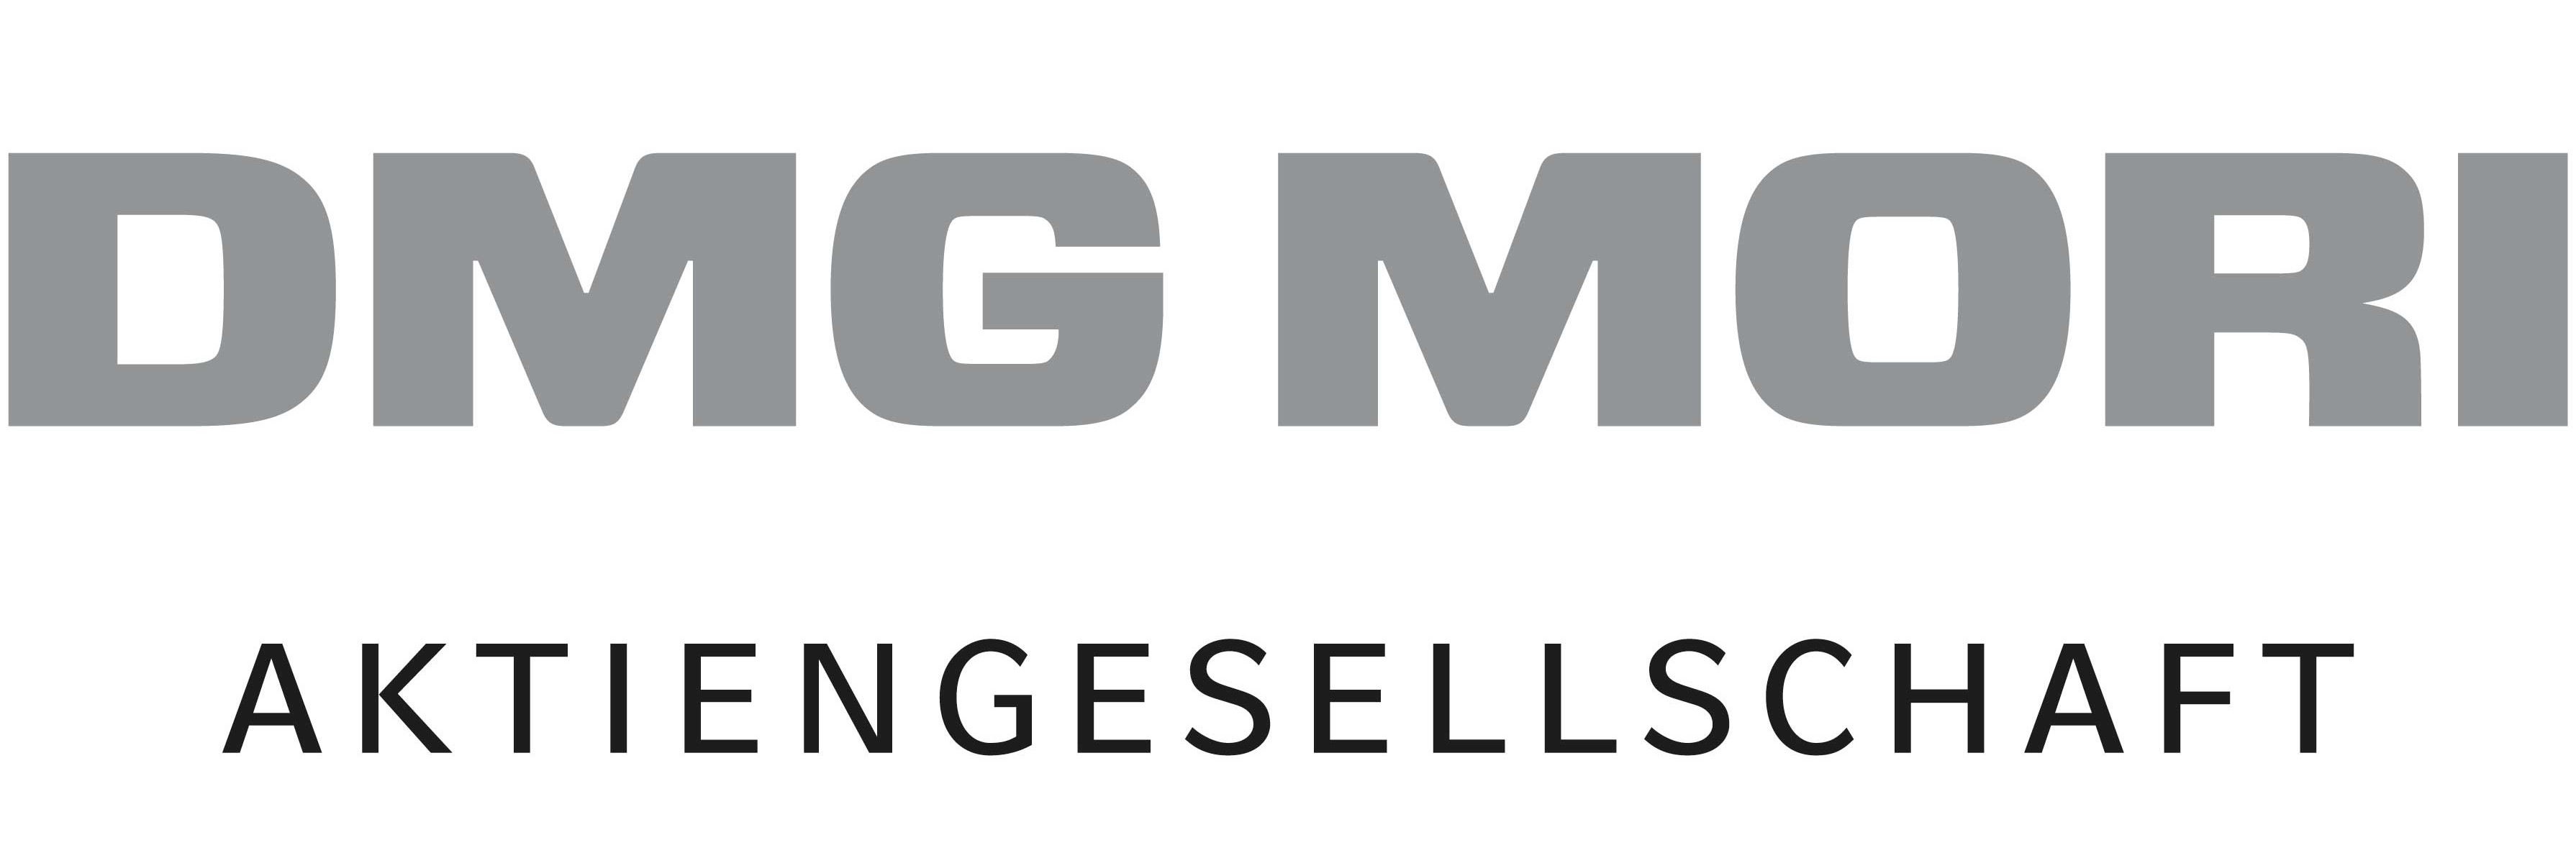 DMG Mori AG Logo